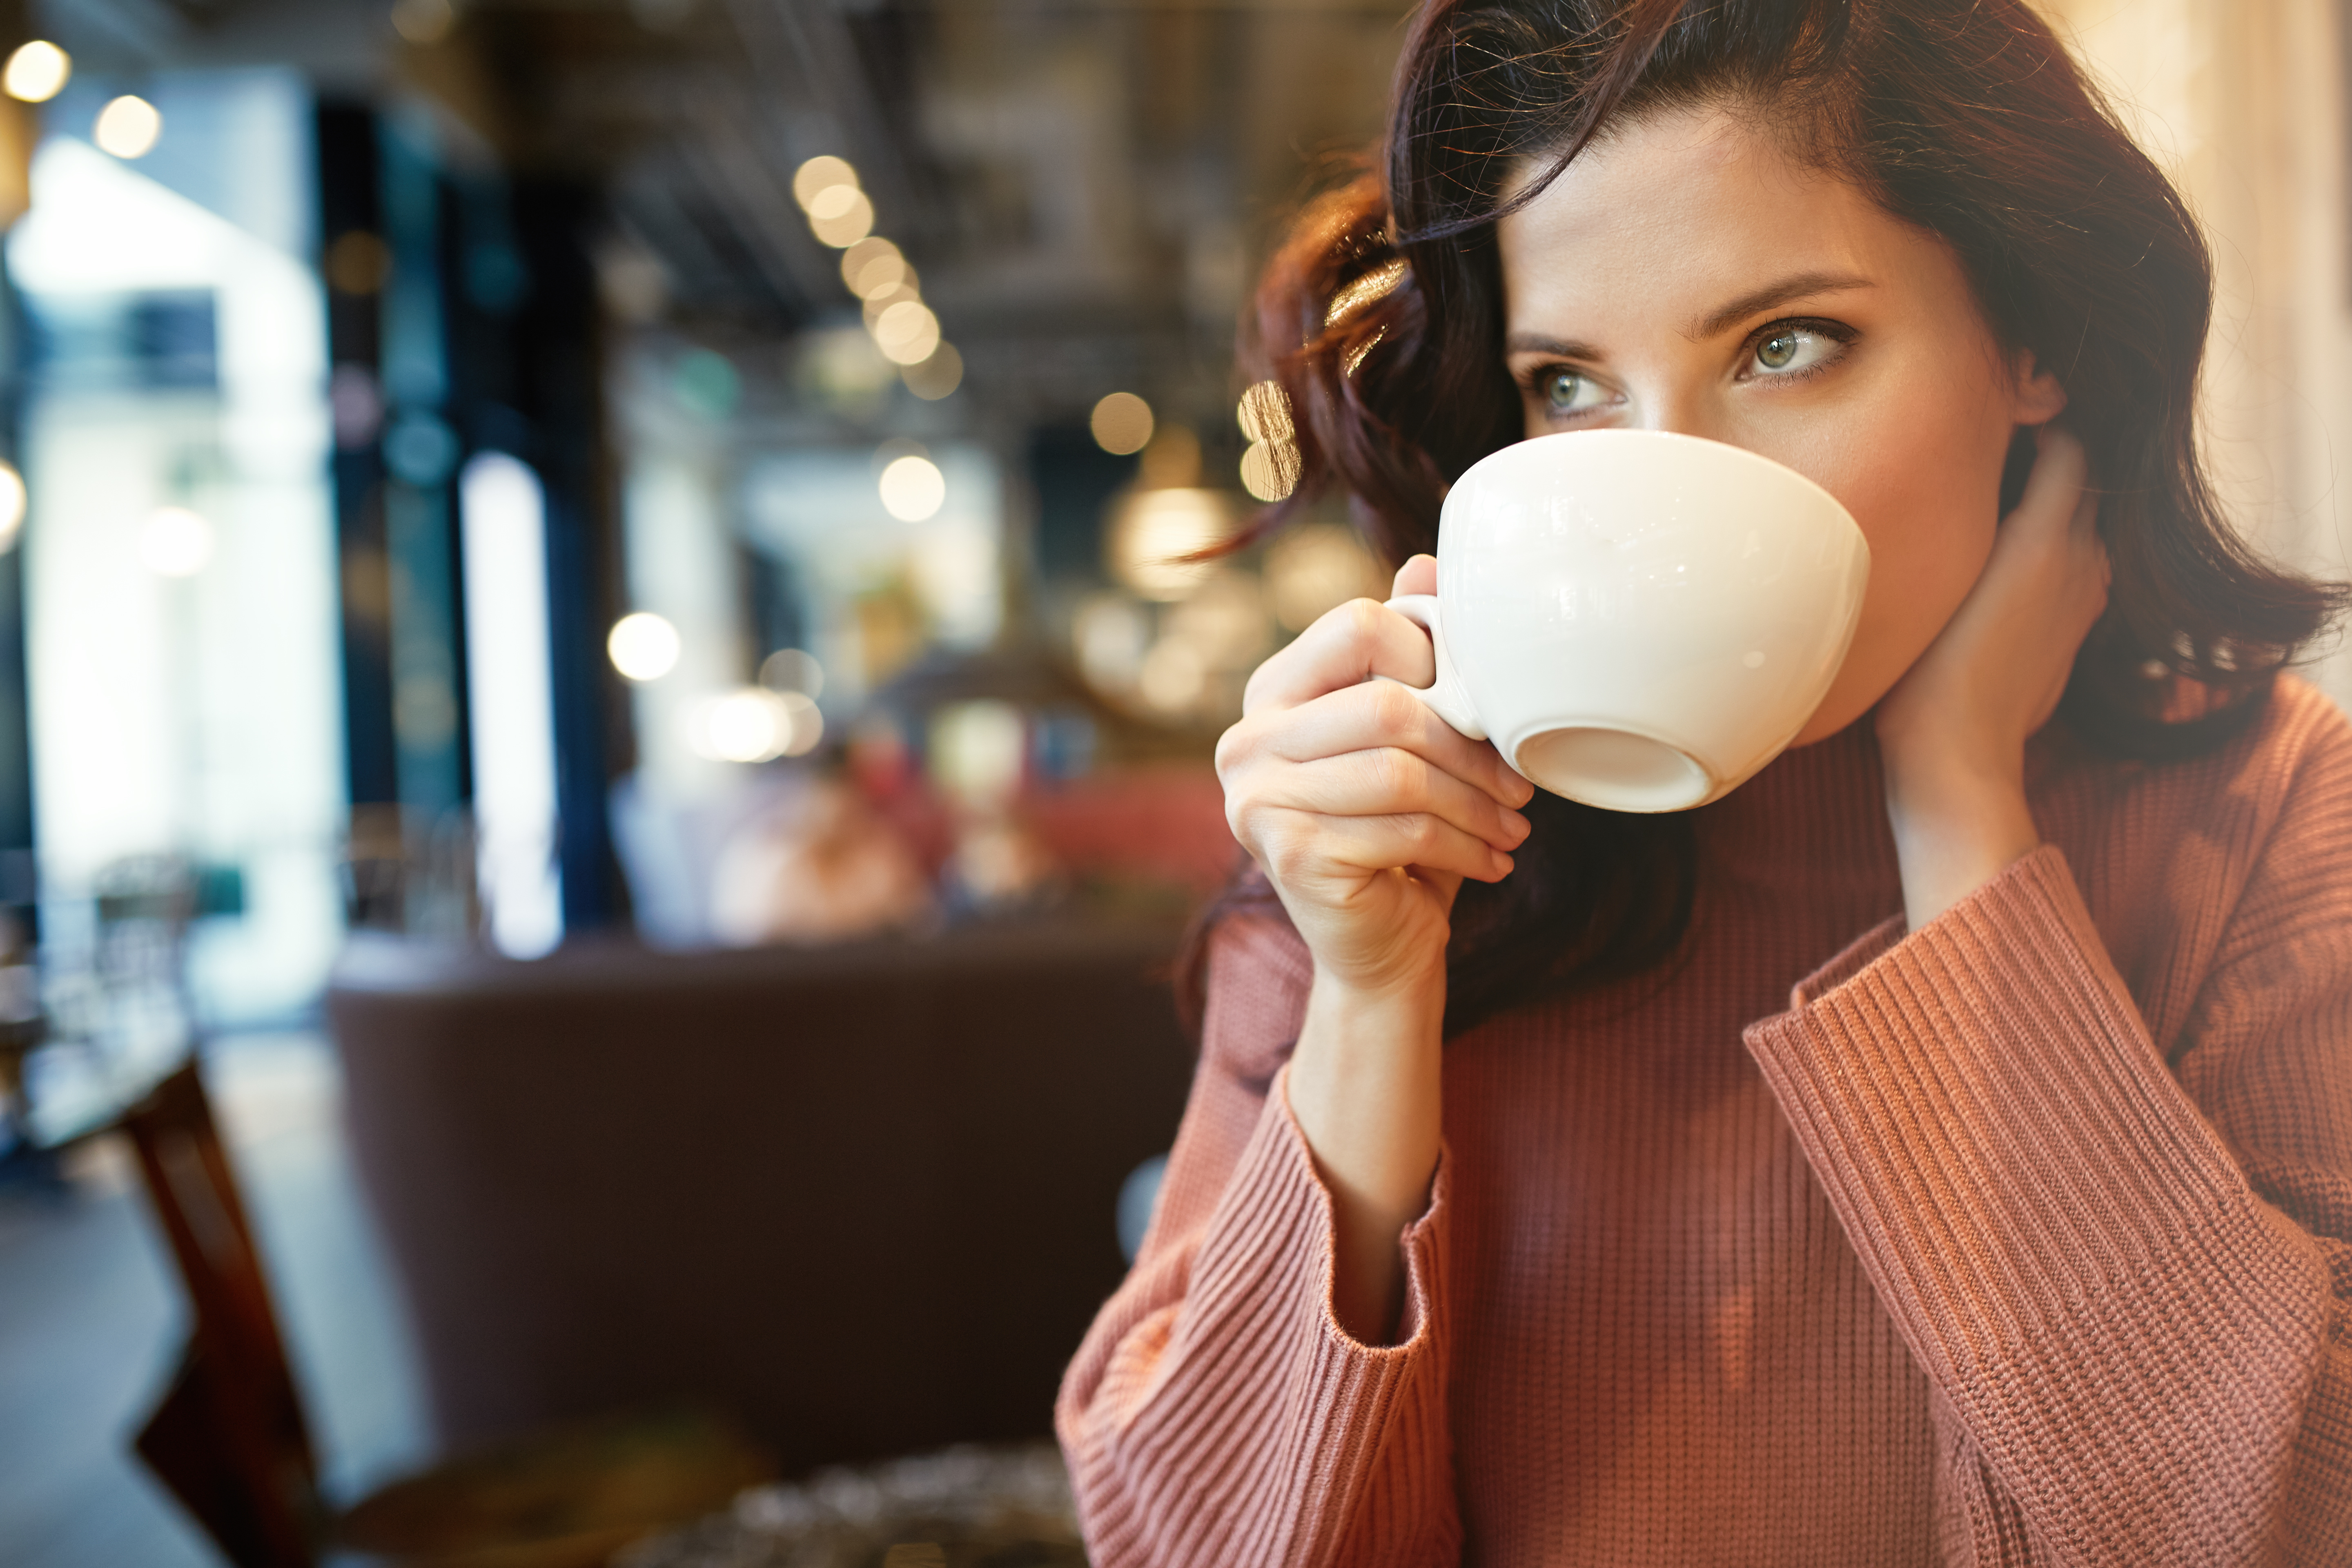 Фото девушек с кофе. Девушка пьет кофе. Девушка пьет кофе в кафе. Девушка пьет чай. Девушка с чашкой кофе.